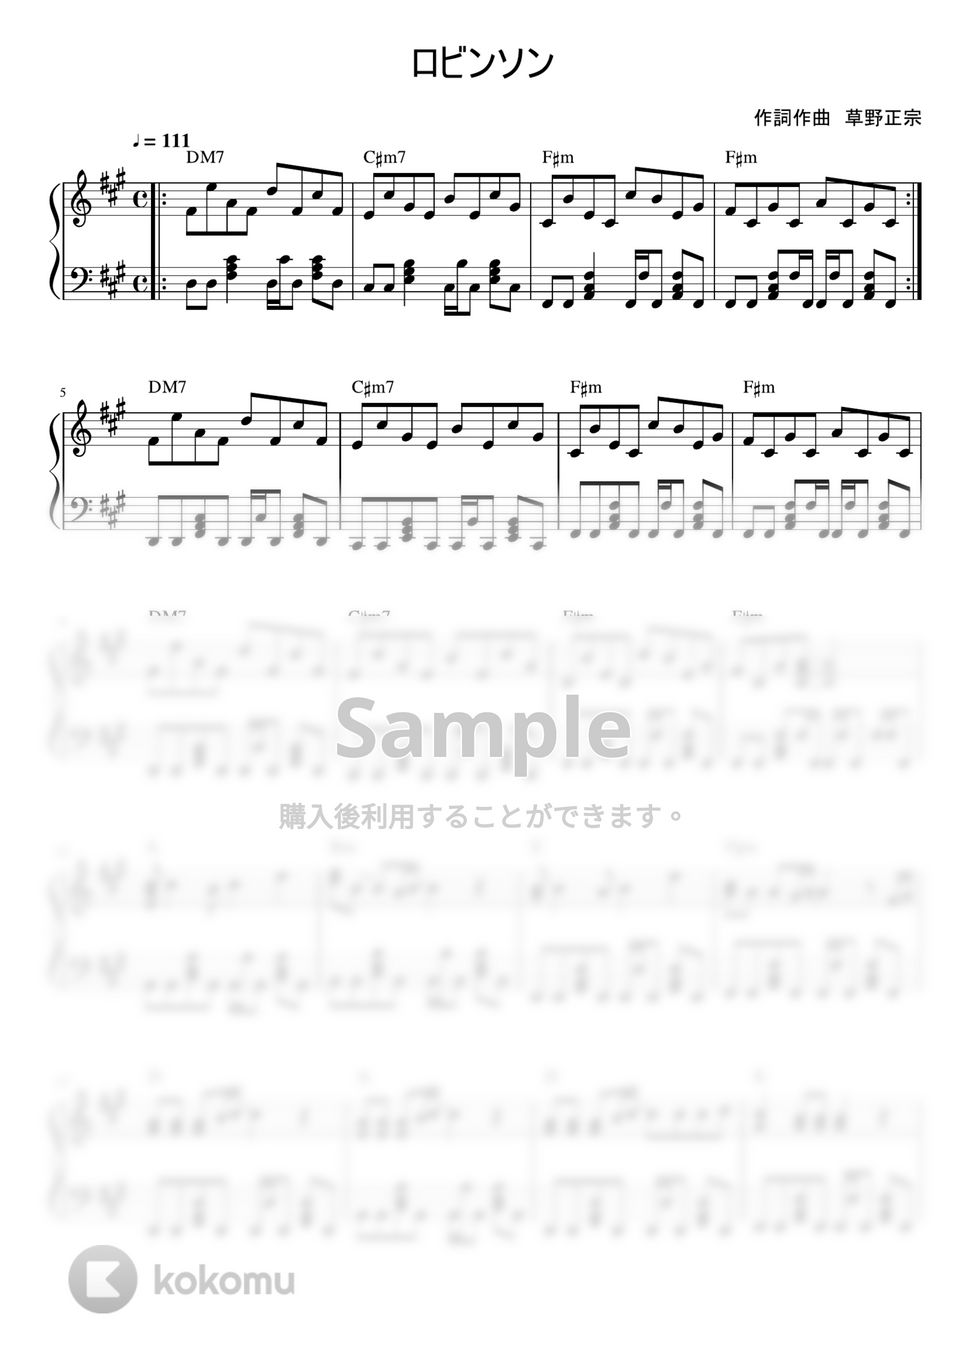 スピッツ - ロビンソン (ピアノソロ) by MIKA